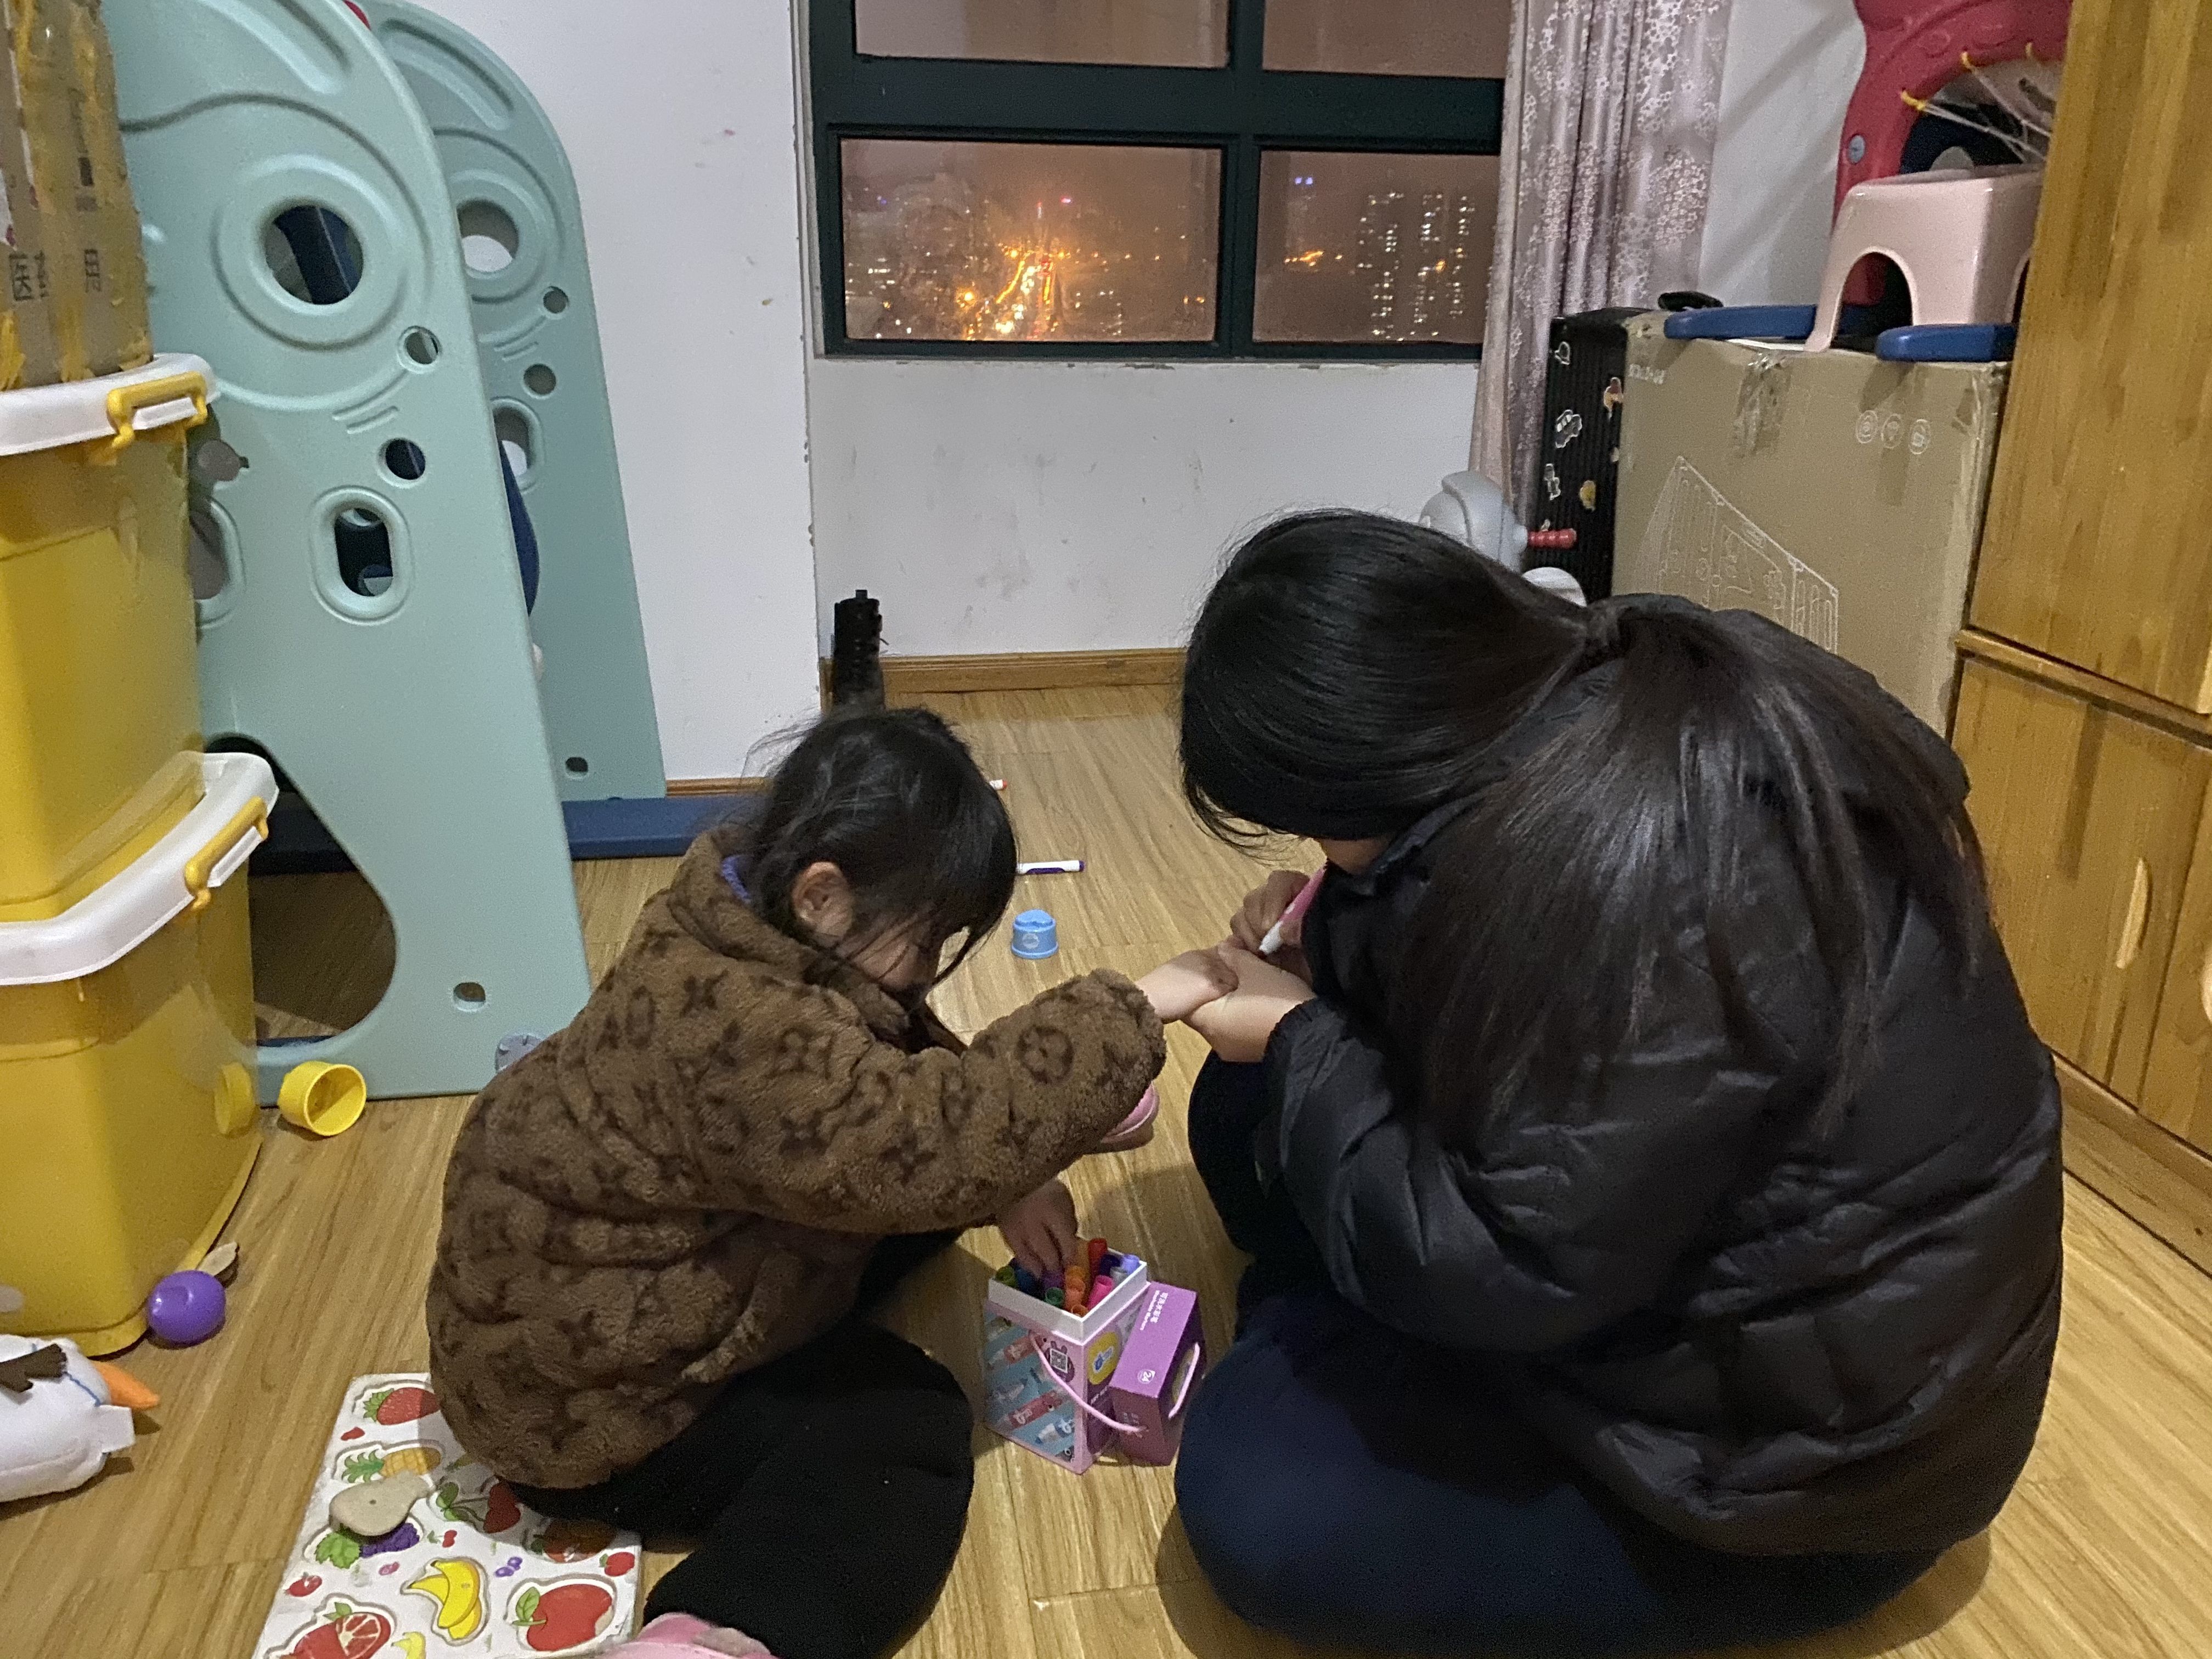 夏珂在陪蓝妮妮玩耍。新京报记者 王霜霜 摄